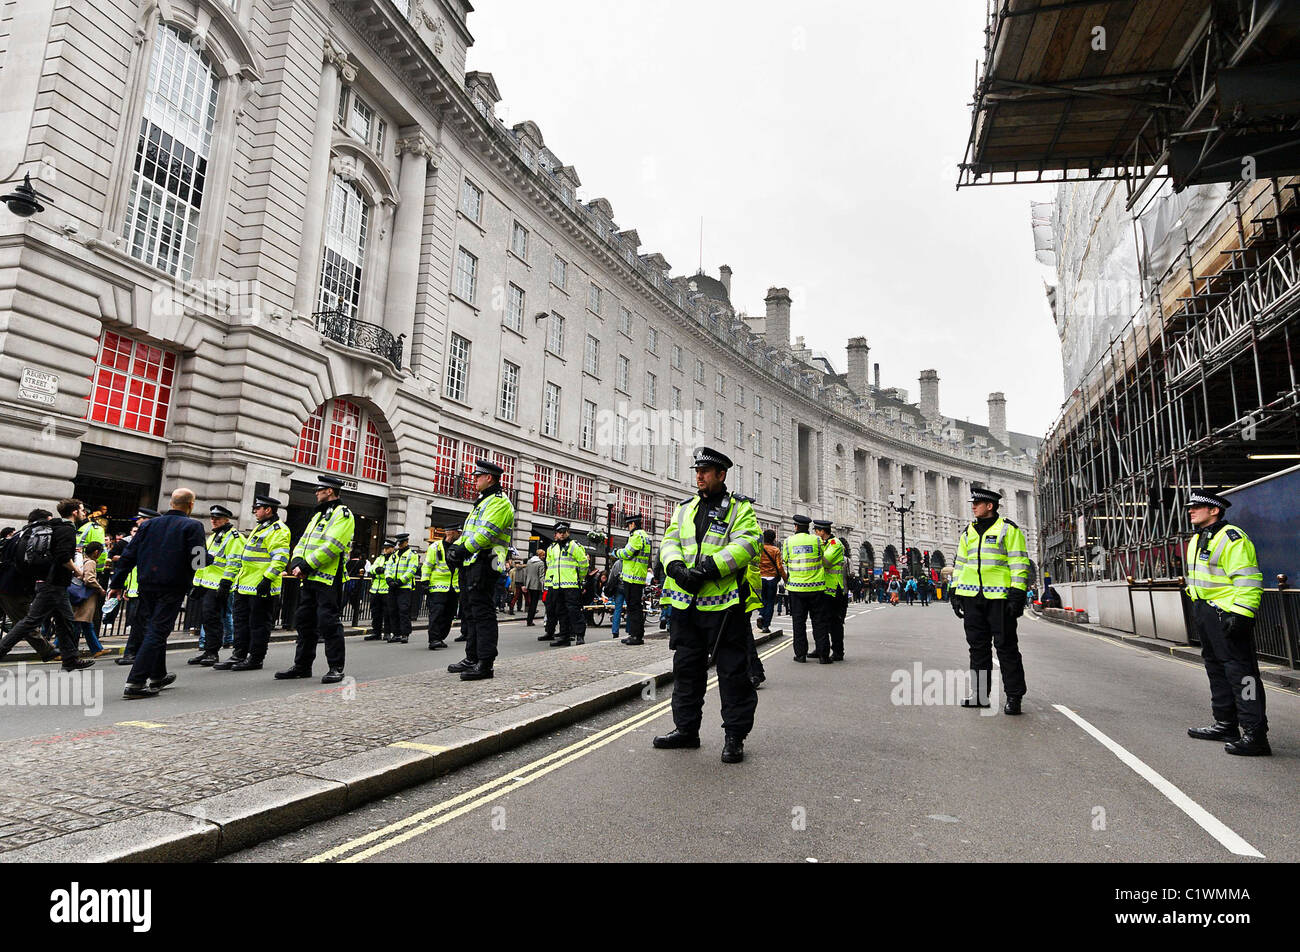 26/03/2011. Police gardez un oeil sur les gens qui entrent dans Regents Street, Londres après le désordre public. Banque D'Images